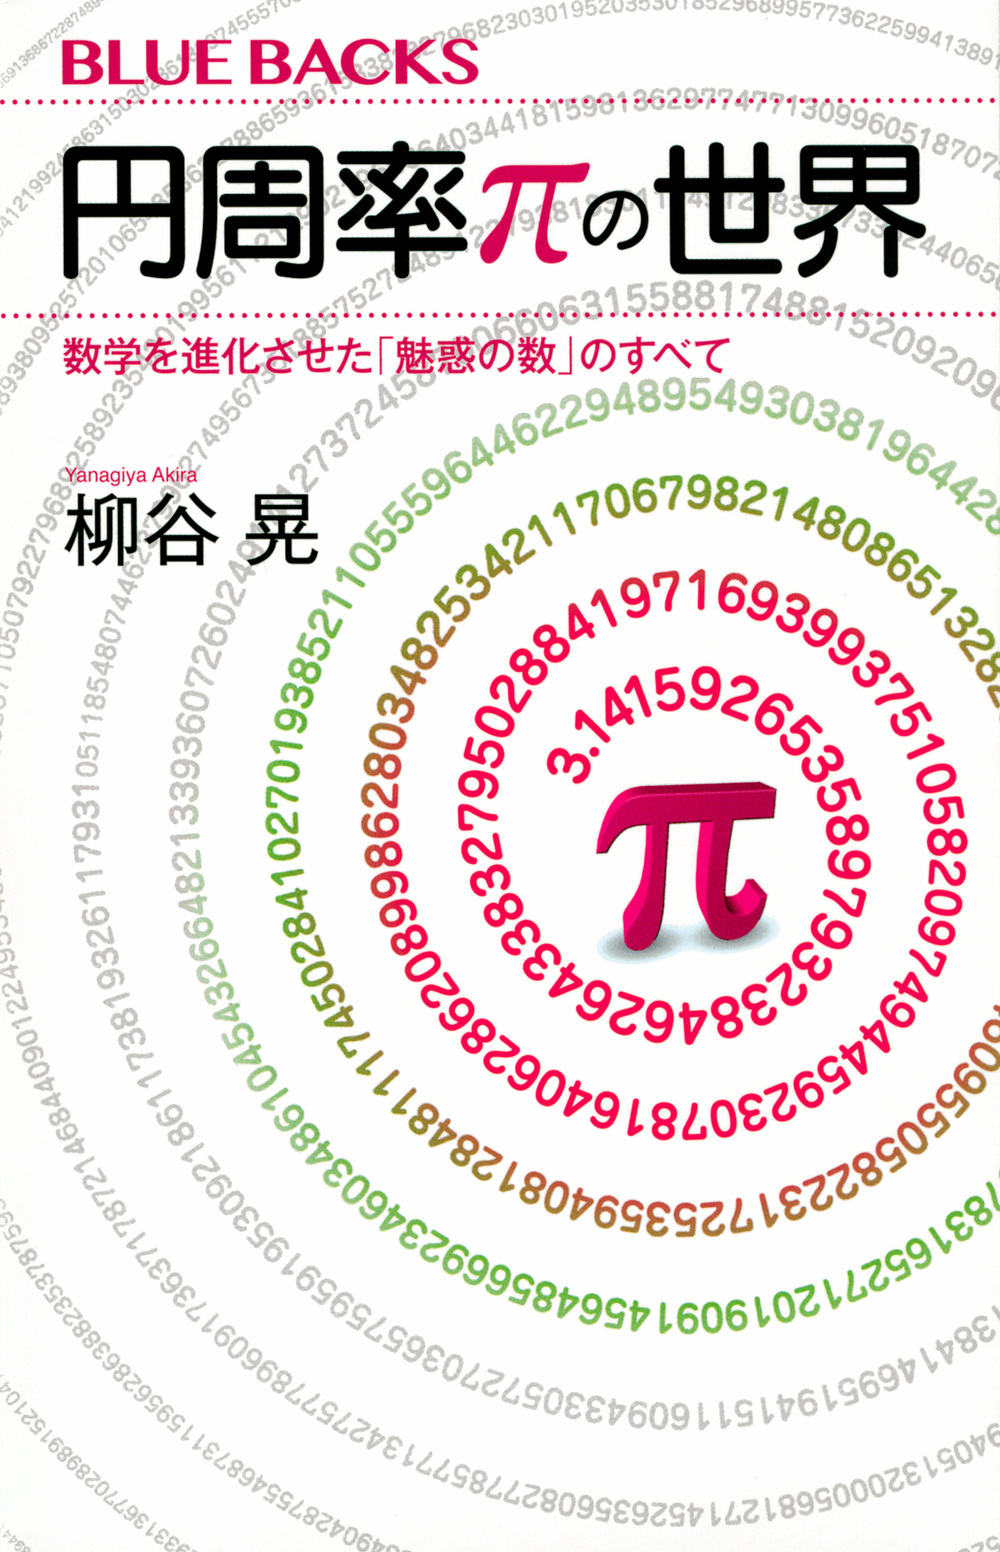 円周率πの世界の商品画像